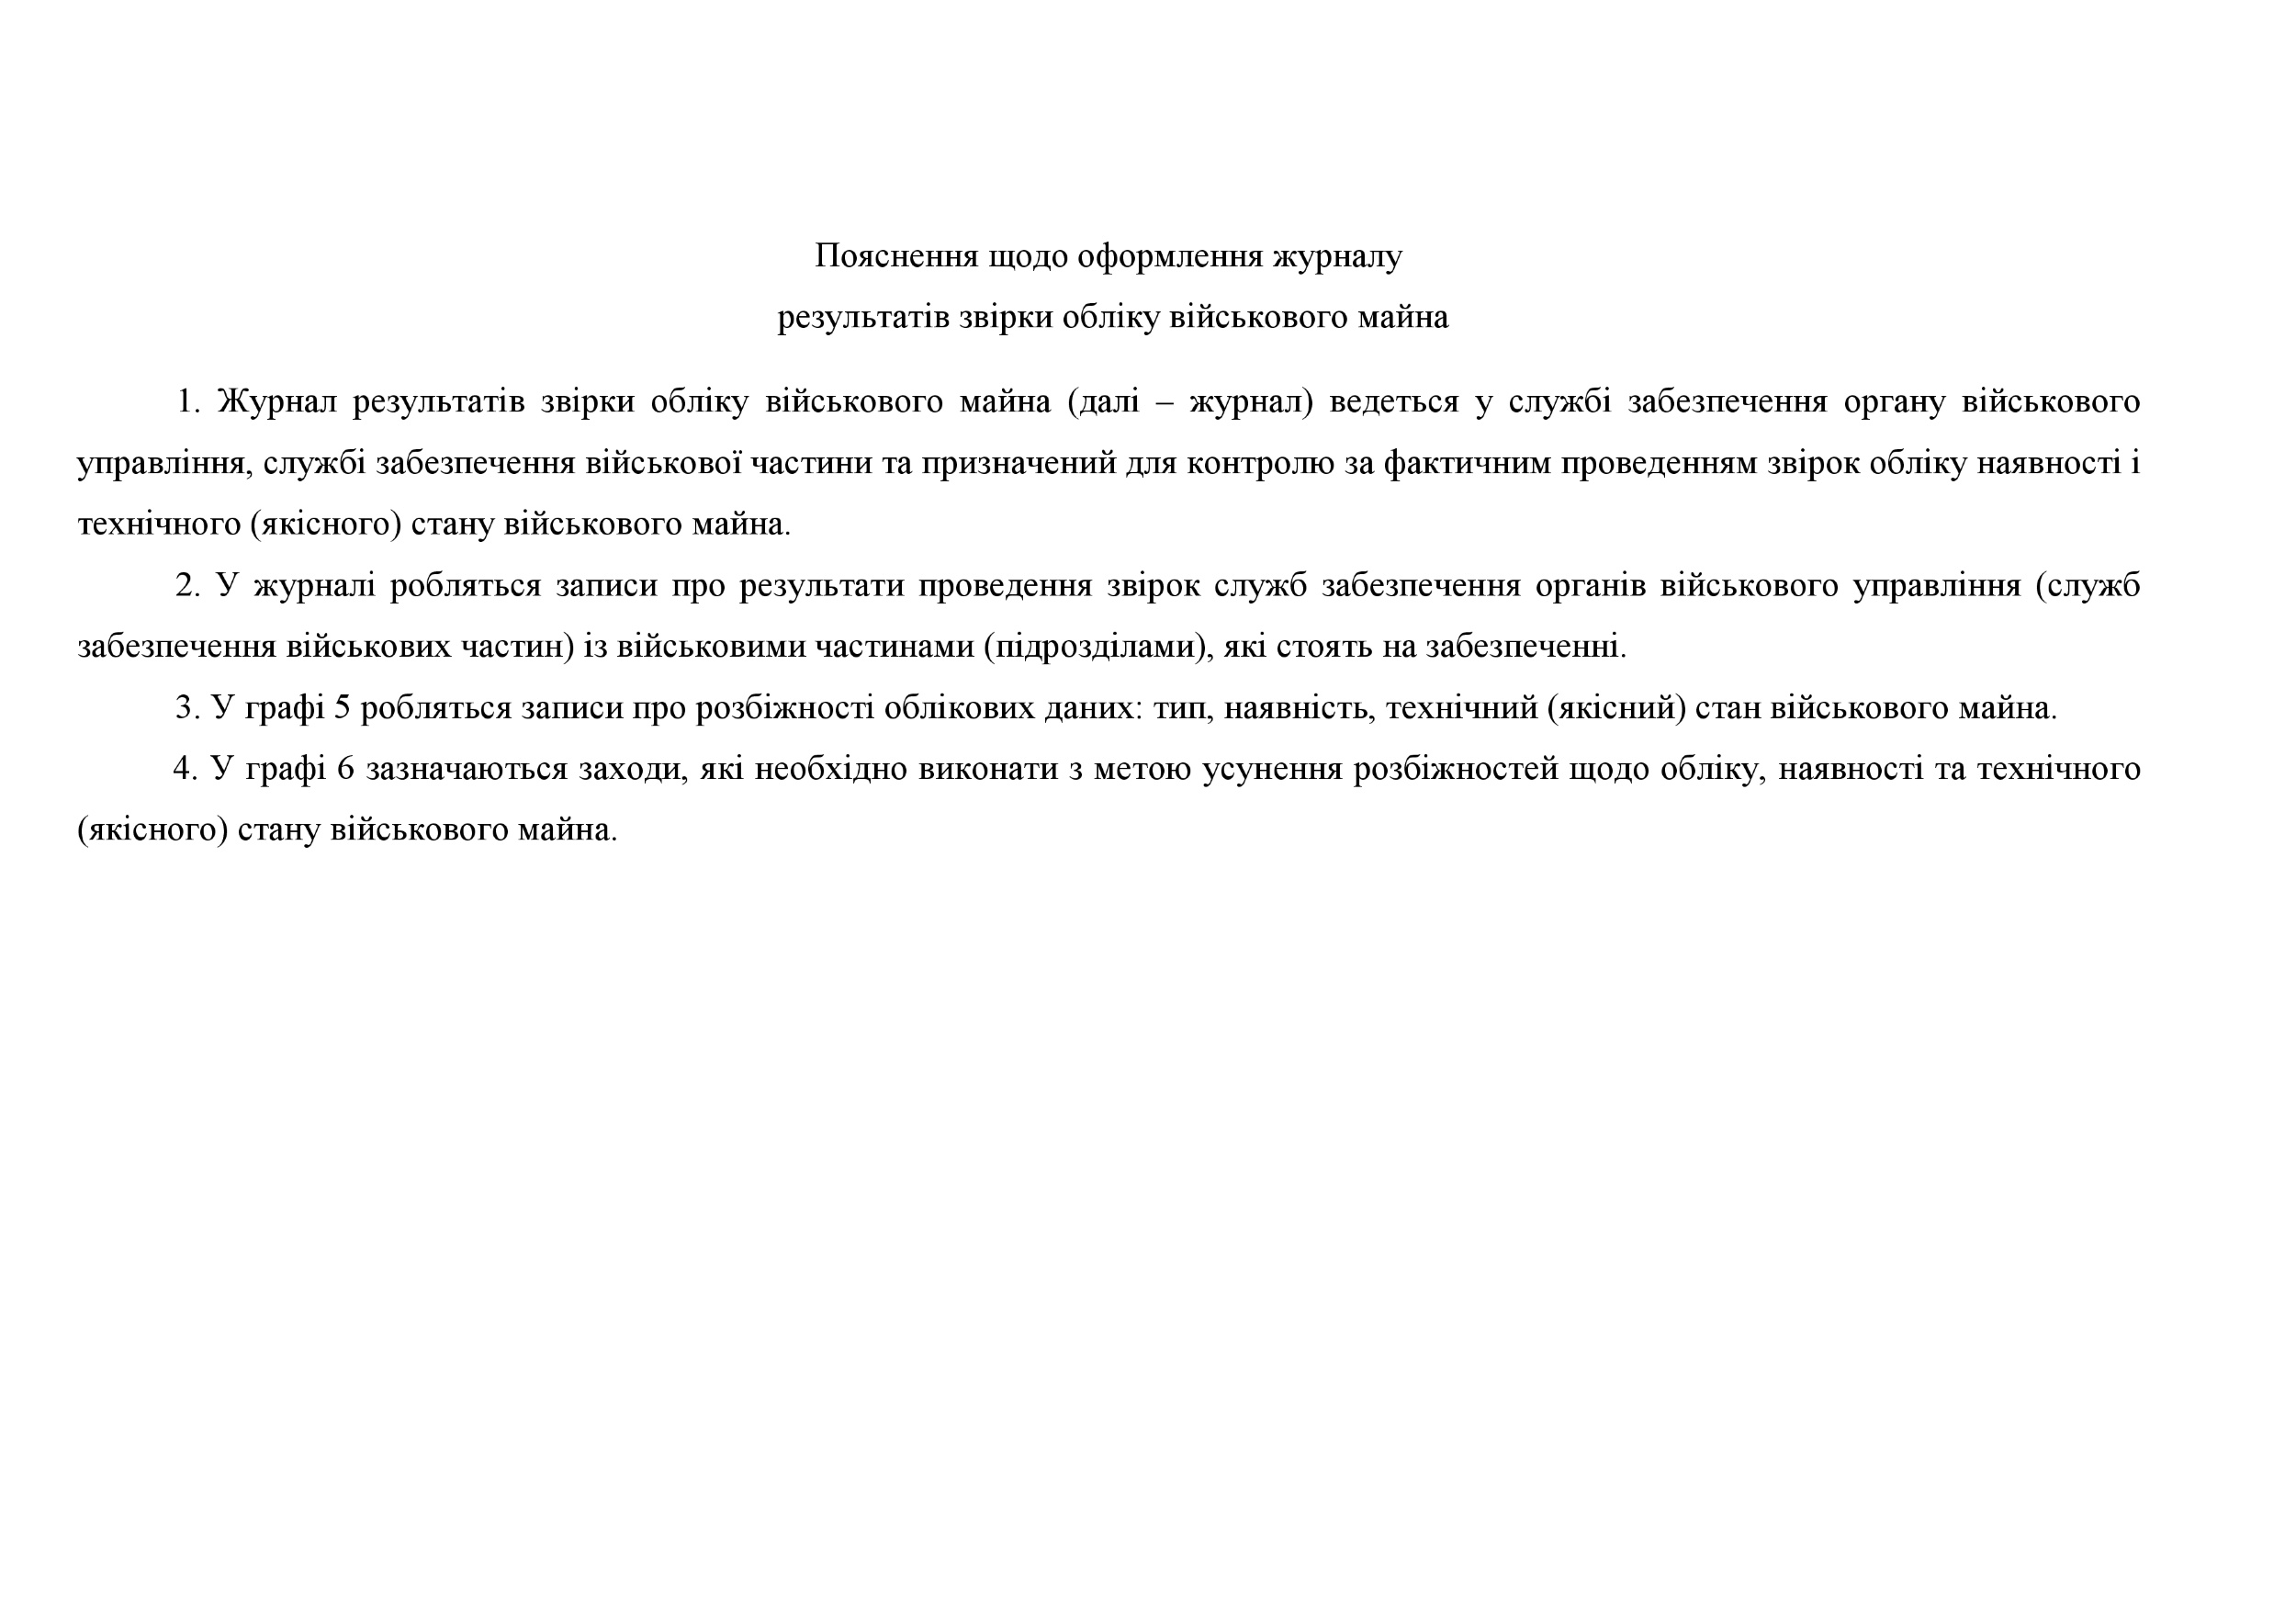 Журнал результатів звірки обліку військового майна, додаток 8. Автор — Міністерство оборони України. 